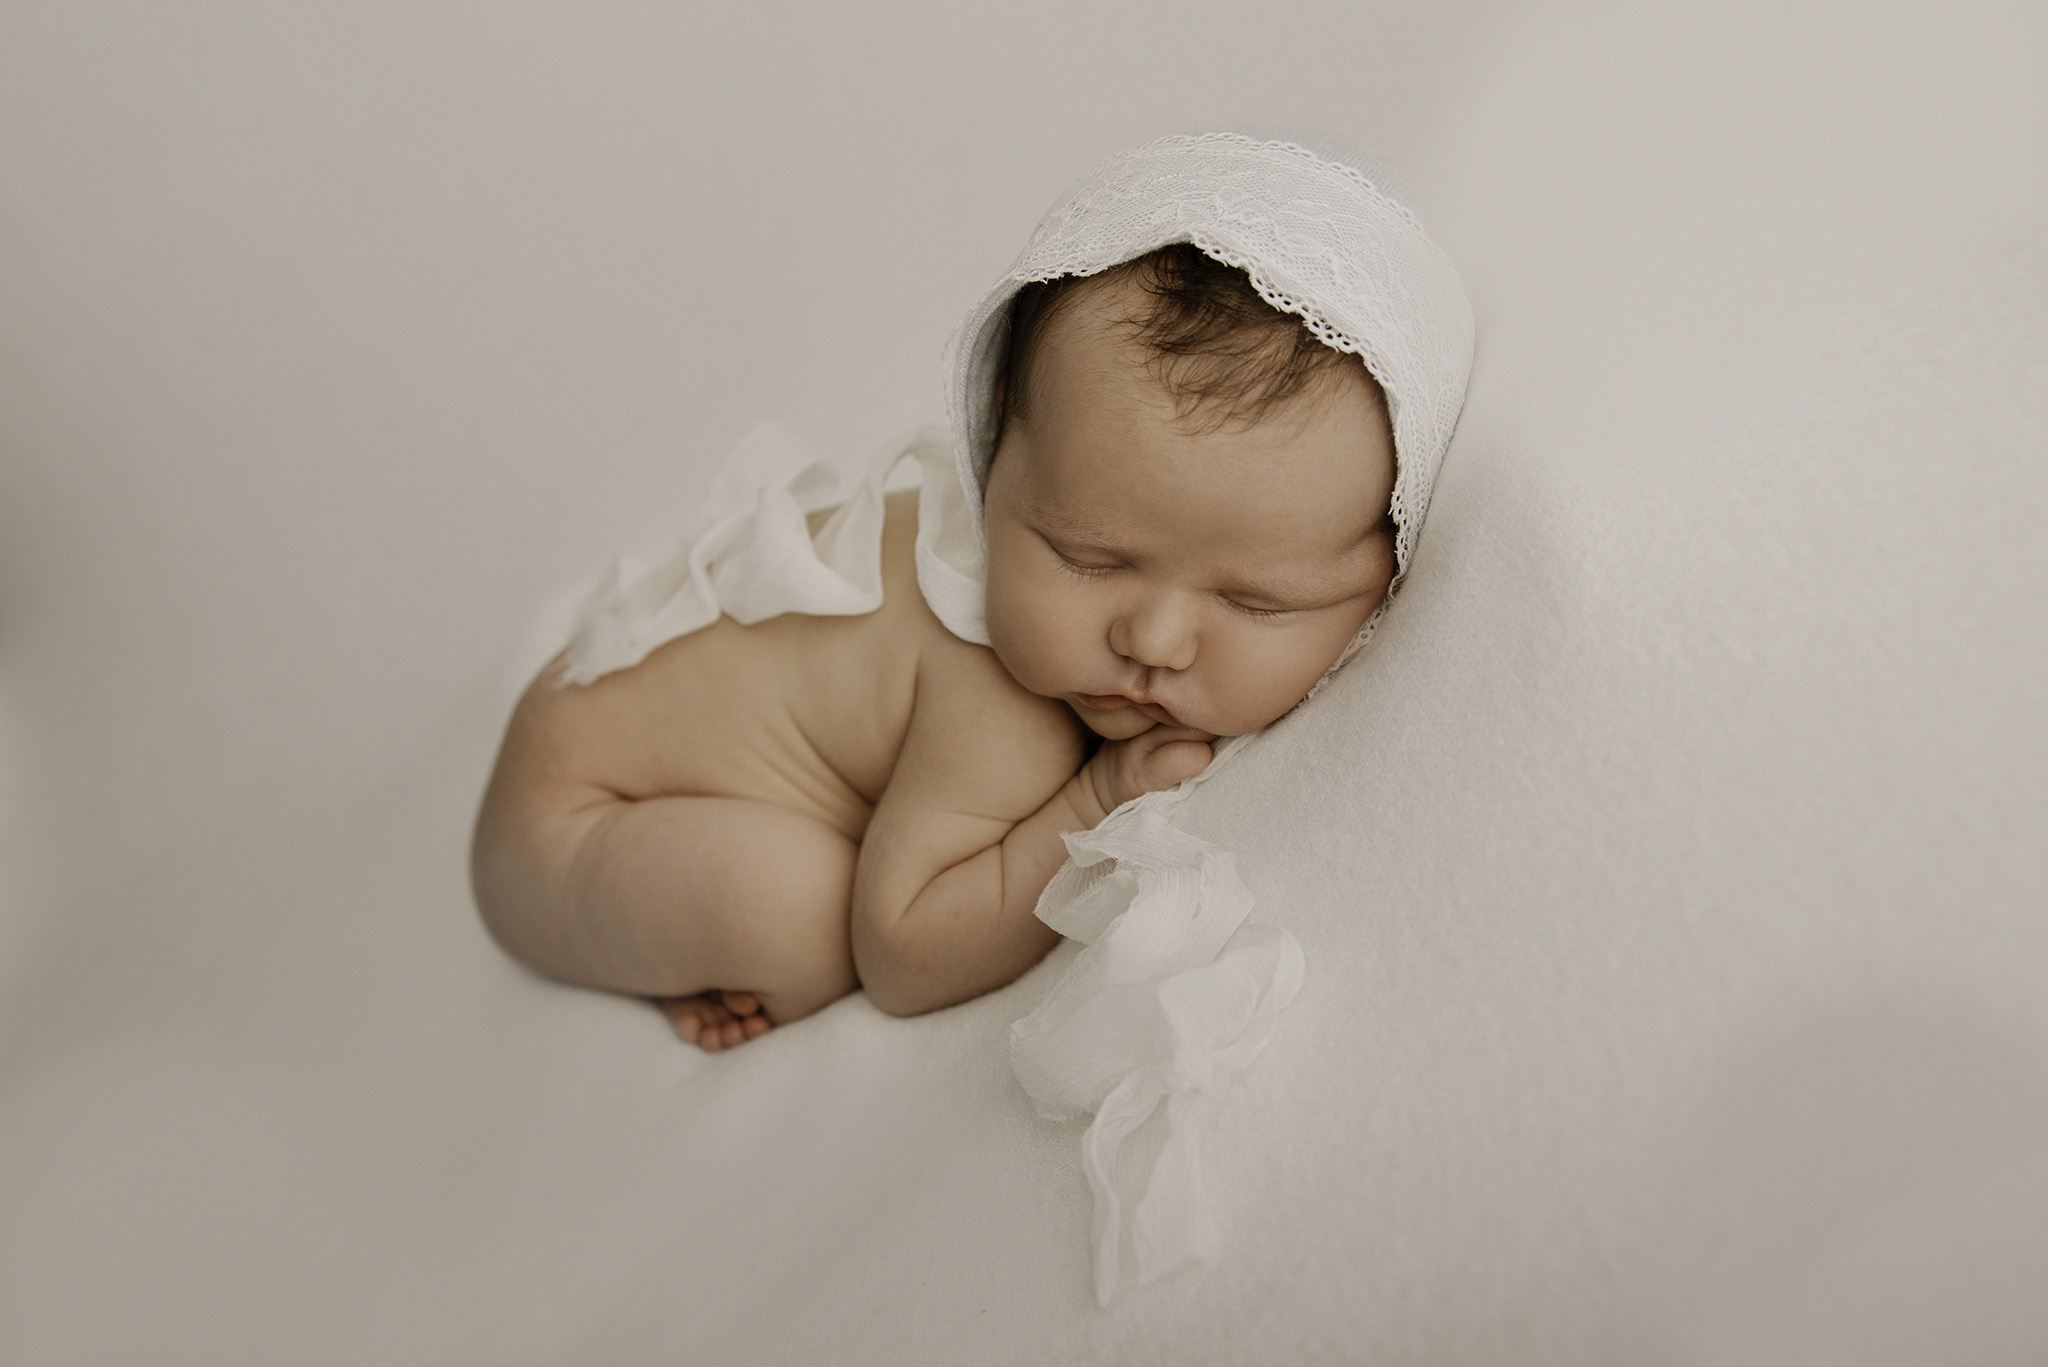 séance bébéà lille - formation photographe nouveau-né - workshop - newborn - One Moment Photographie - 507 copie